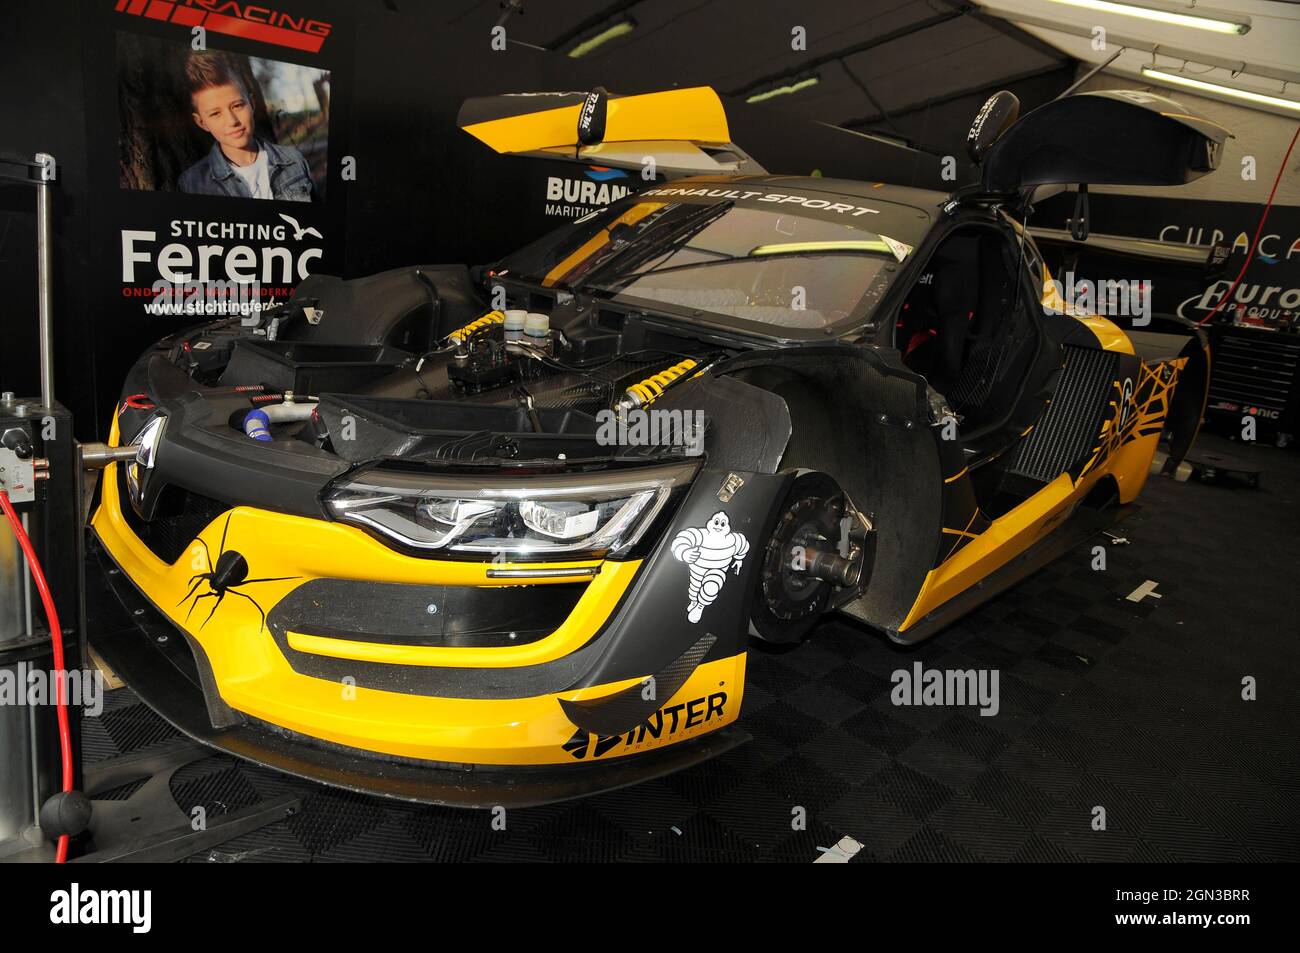 Renault Sport RS01: carro de corrida tem dia de viatura policial